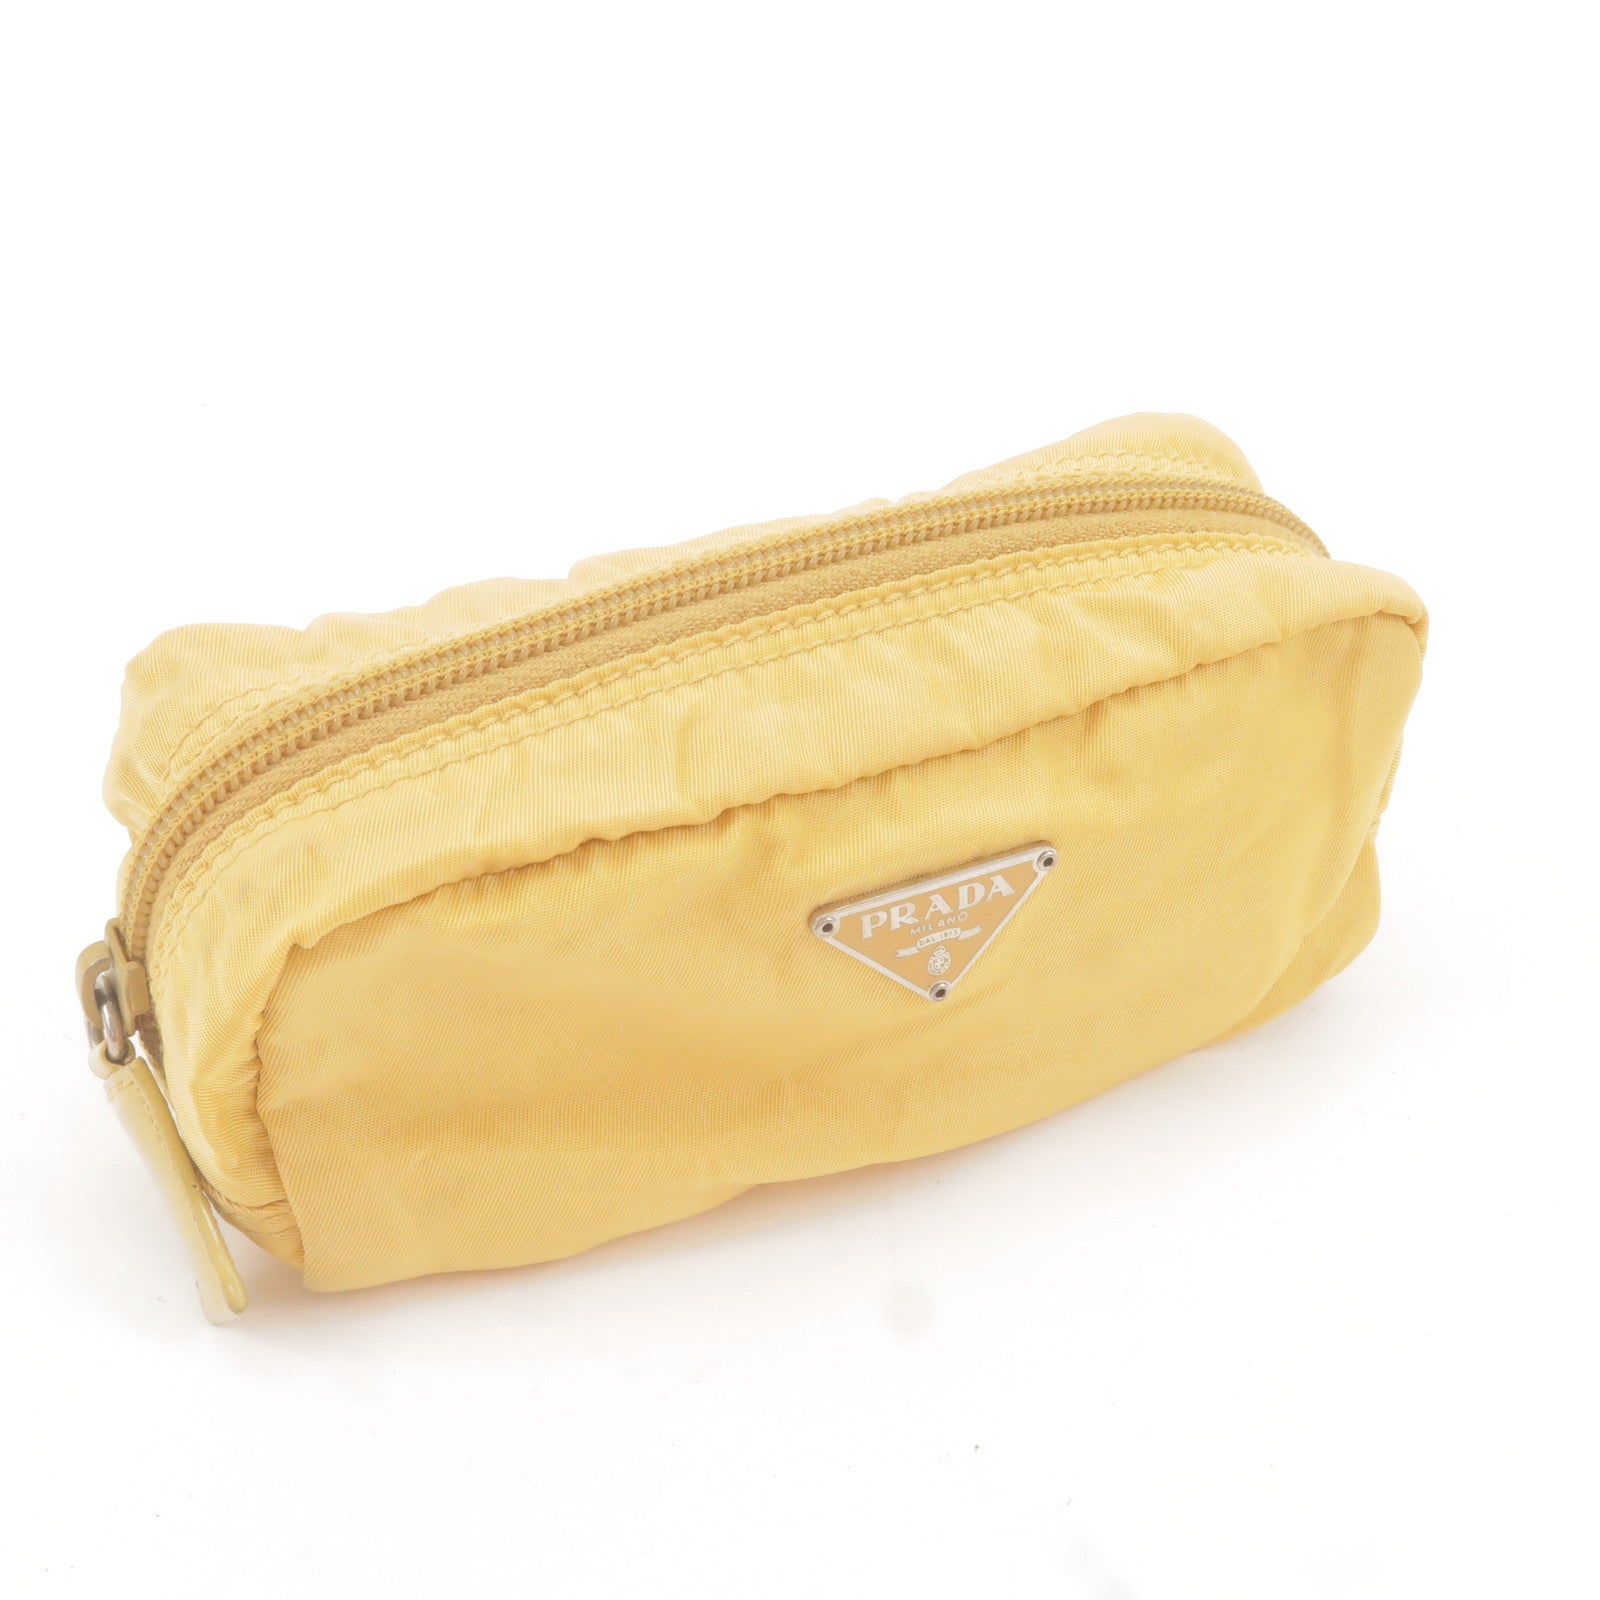 Prada, Bags, Prada Pencil Case Cosmetic Bag